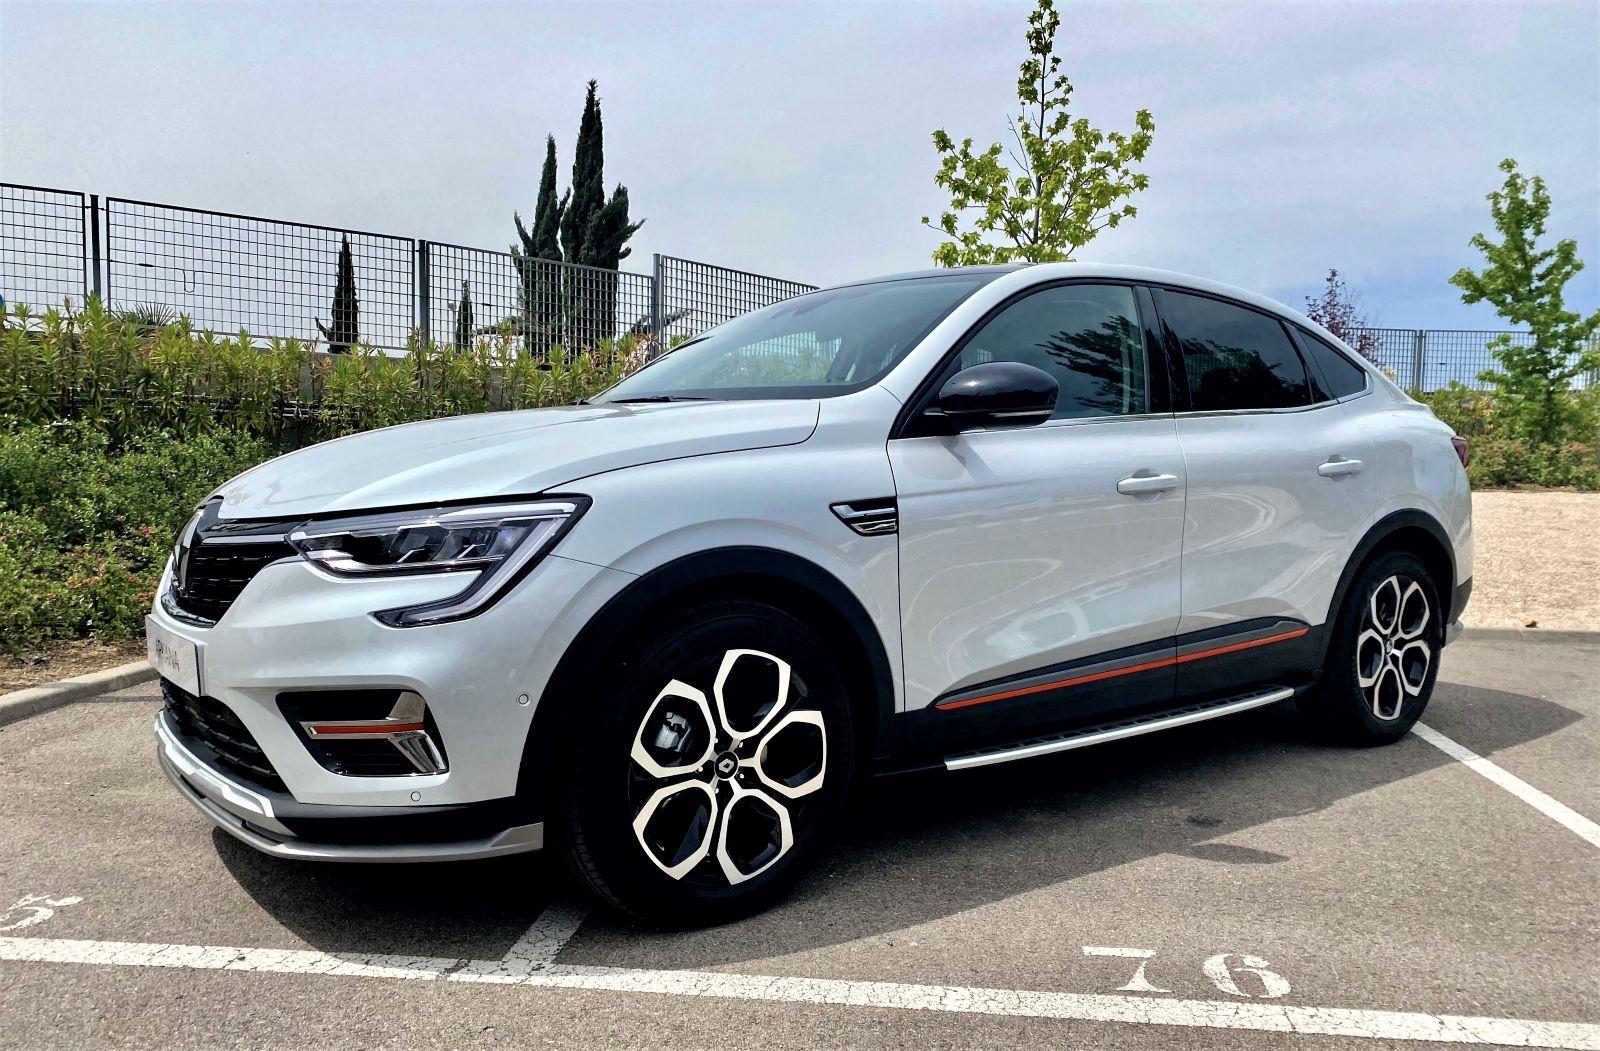 El Renault Arkana llega a España: un SUV coupé híbrido y etiqueta